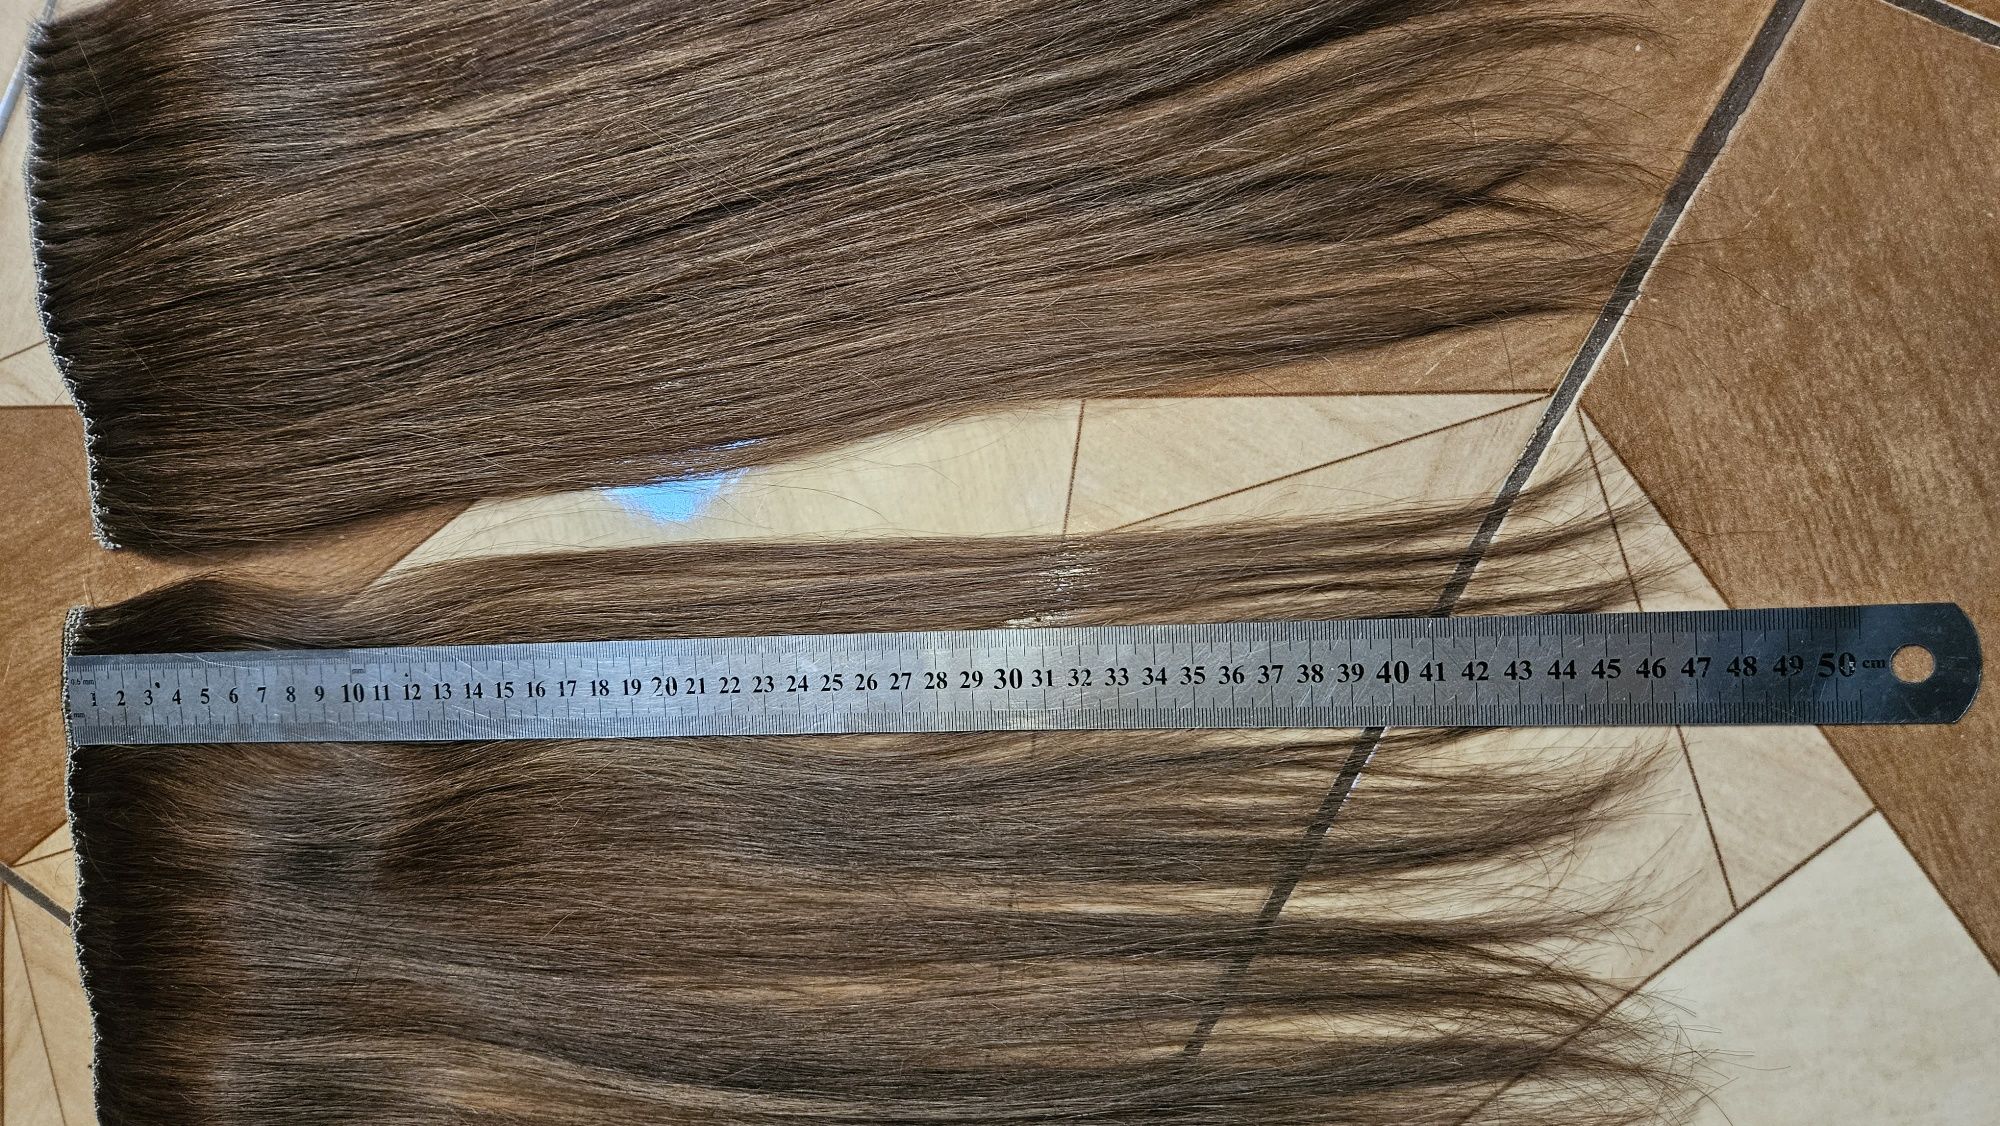 Тресы  из натуральных волос